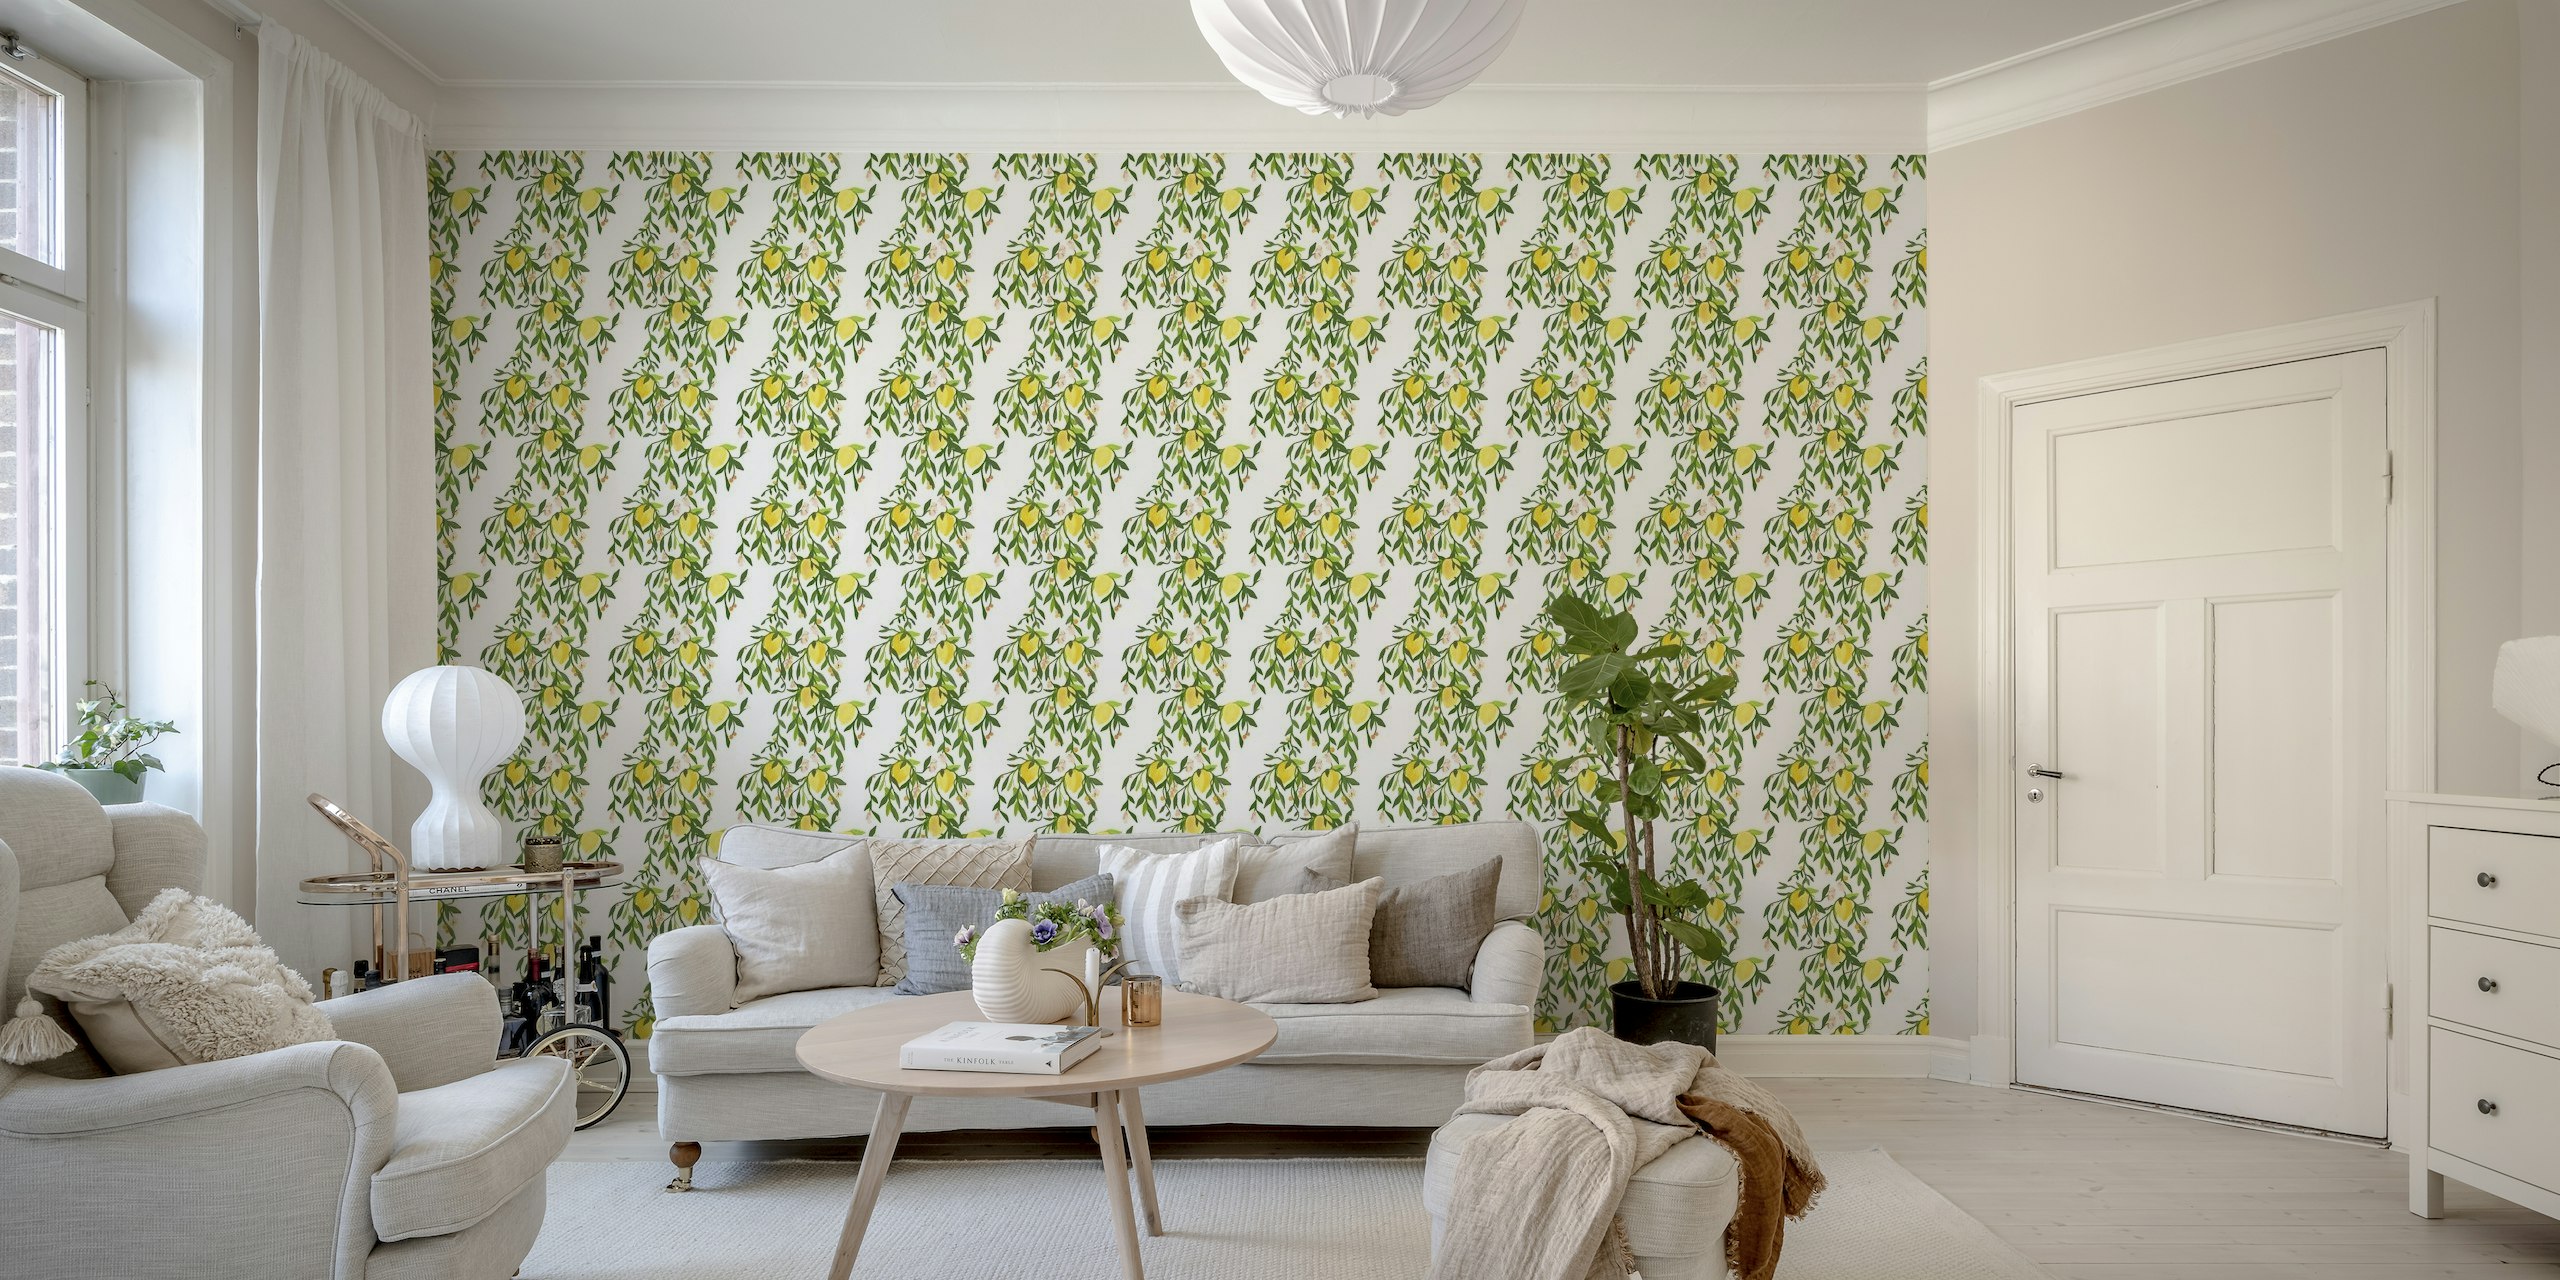 Citrus lemons wallpaper